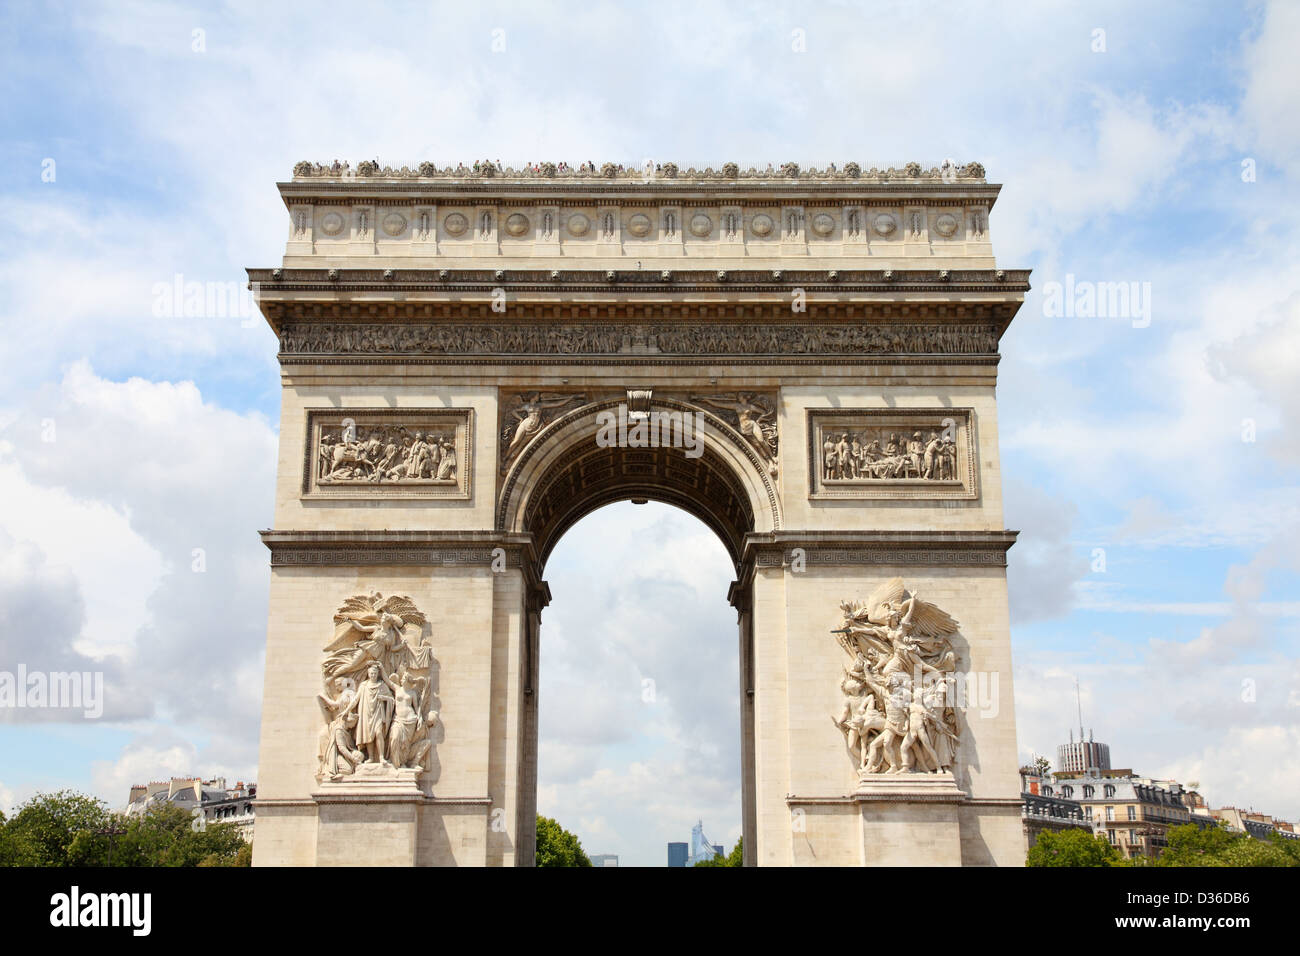 Paris, France, le célèbre Arc de Triomphe (Arc de Triomphe) situé à l'extrémité de la rue des Champs-Elysées. UNESCO World Heritage Site. Banque D'Images